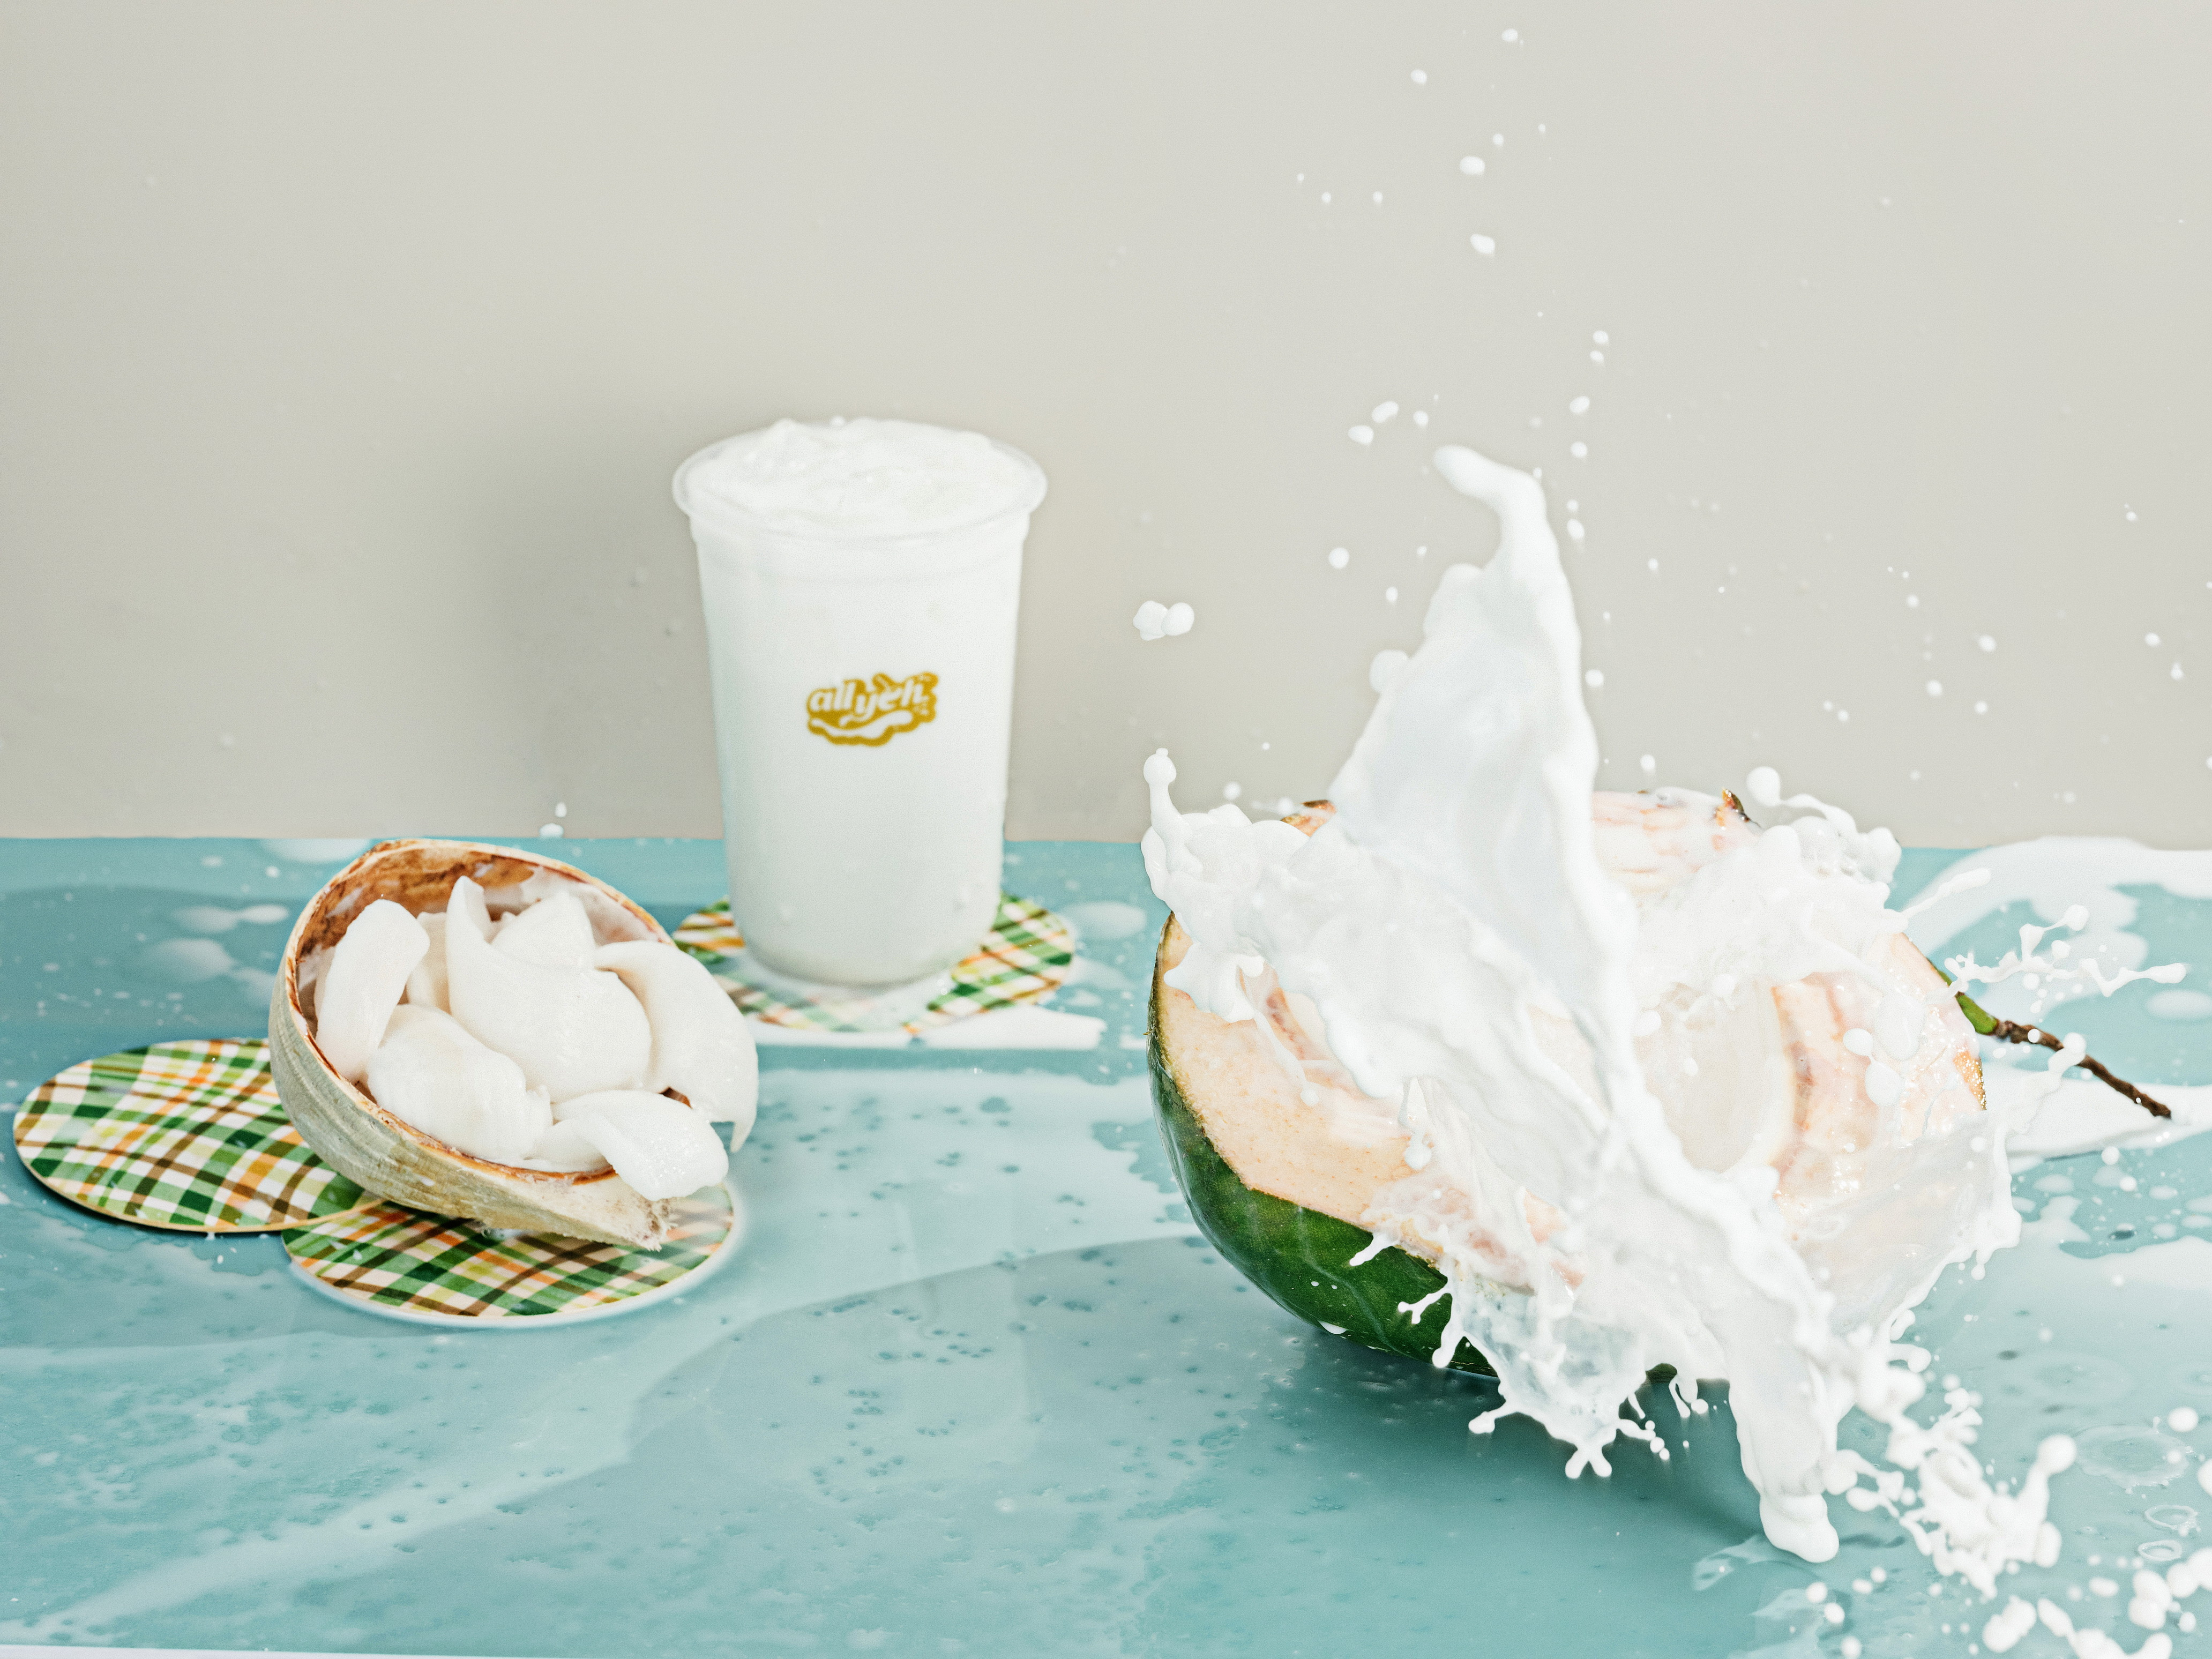 「傲椰」从椰子切入时尚健康饮品市场 打造国内椰子系列消费品牌